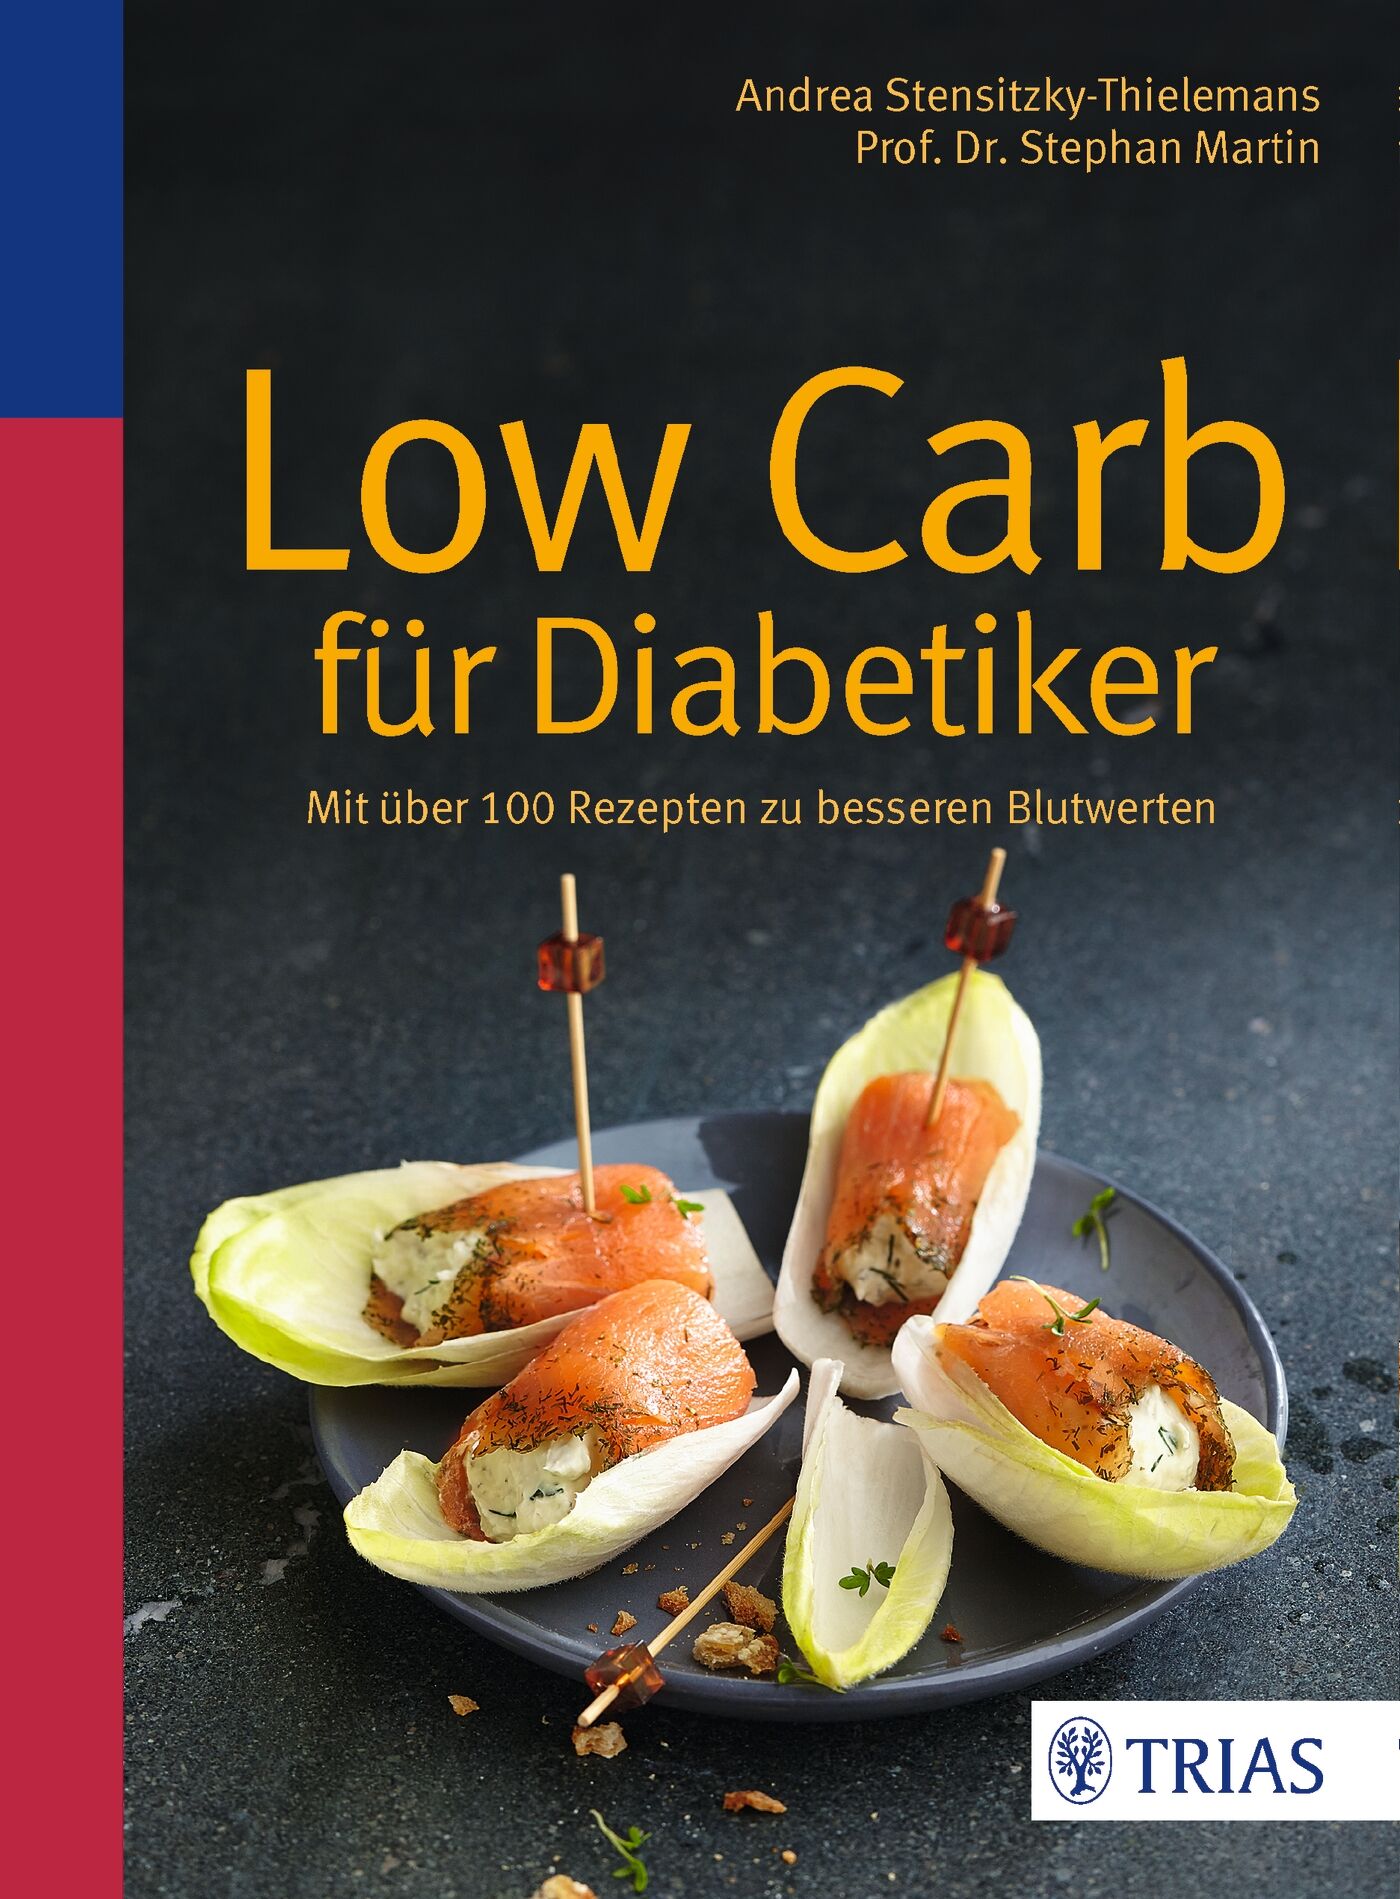 Low Carb für Diabetiker, 9783432102894